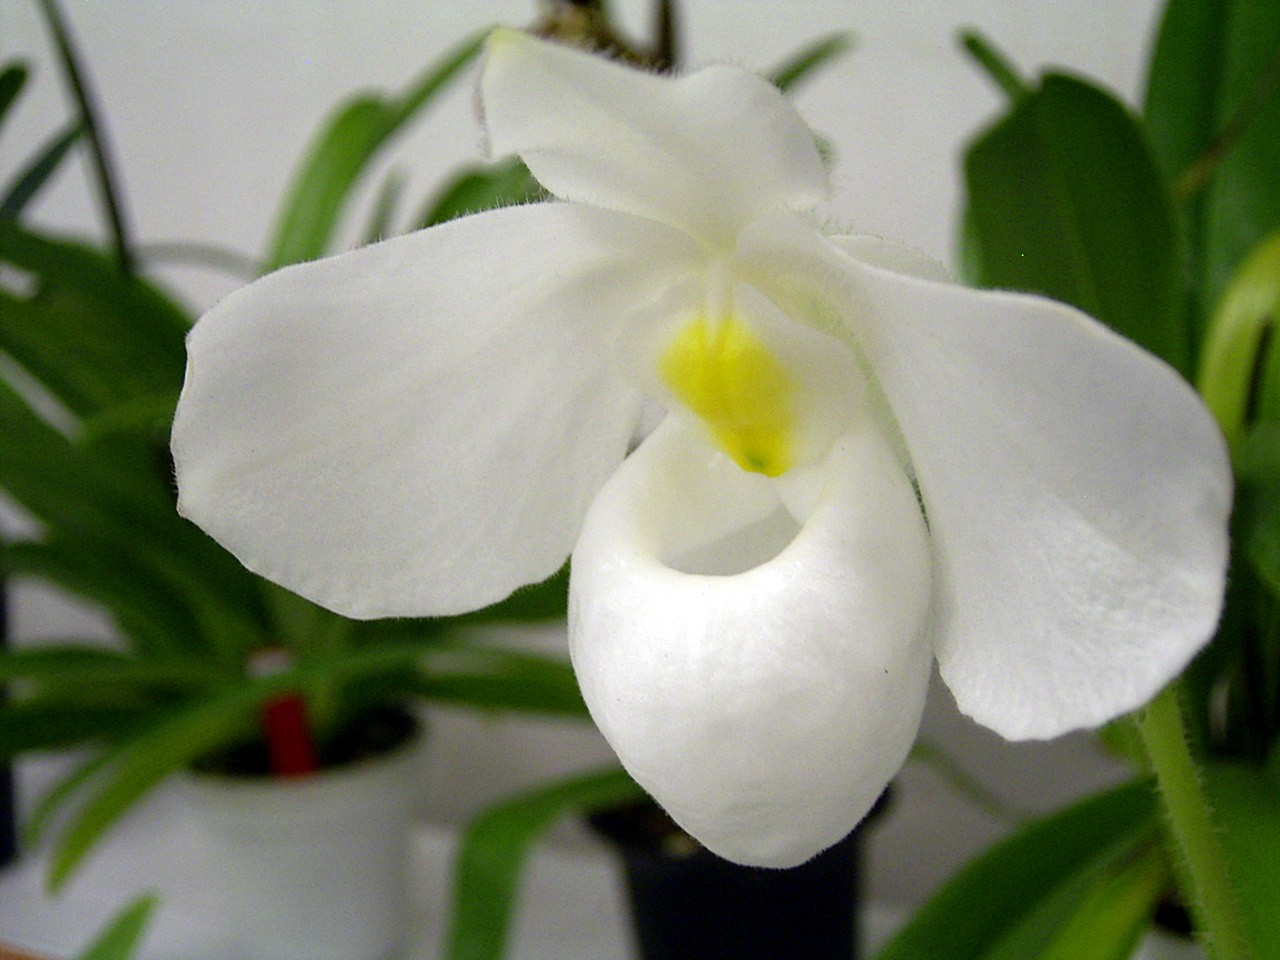 http://orchids.la.coocan.jp/Paphiopedilum/Paphiopedilum%20delenatii%20album/R0053325.JPG